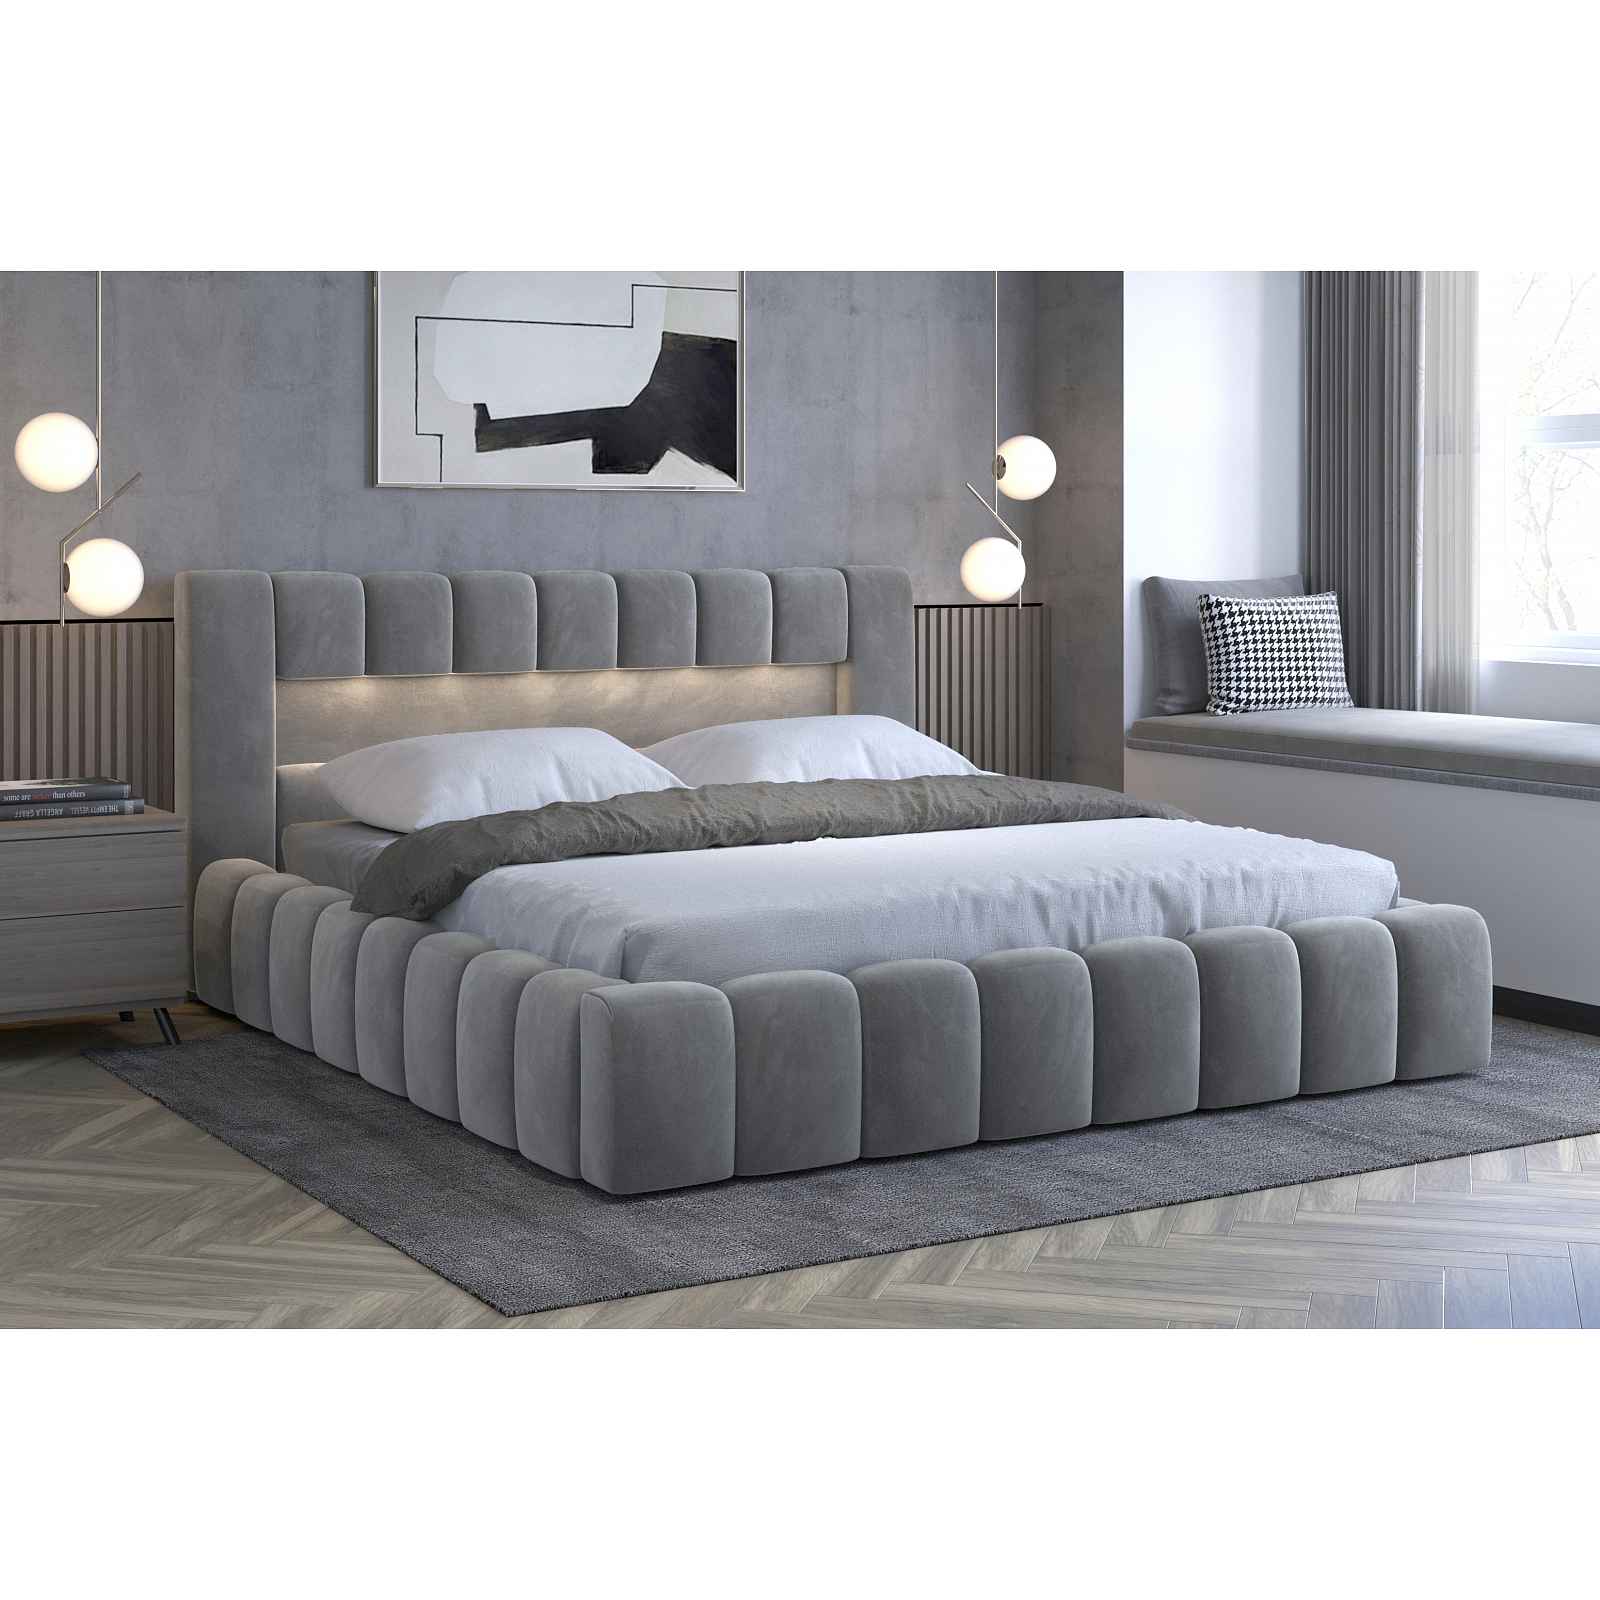 Moderní postel Lebrasco, 180x200cm, šedá + LED